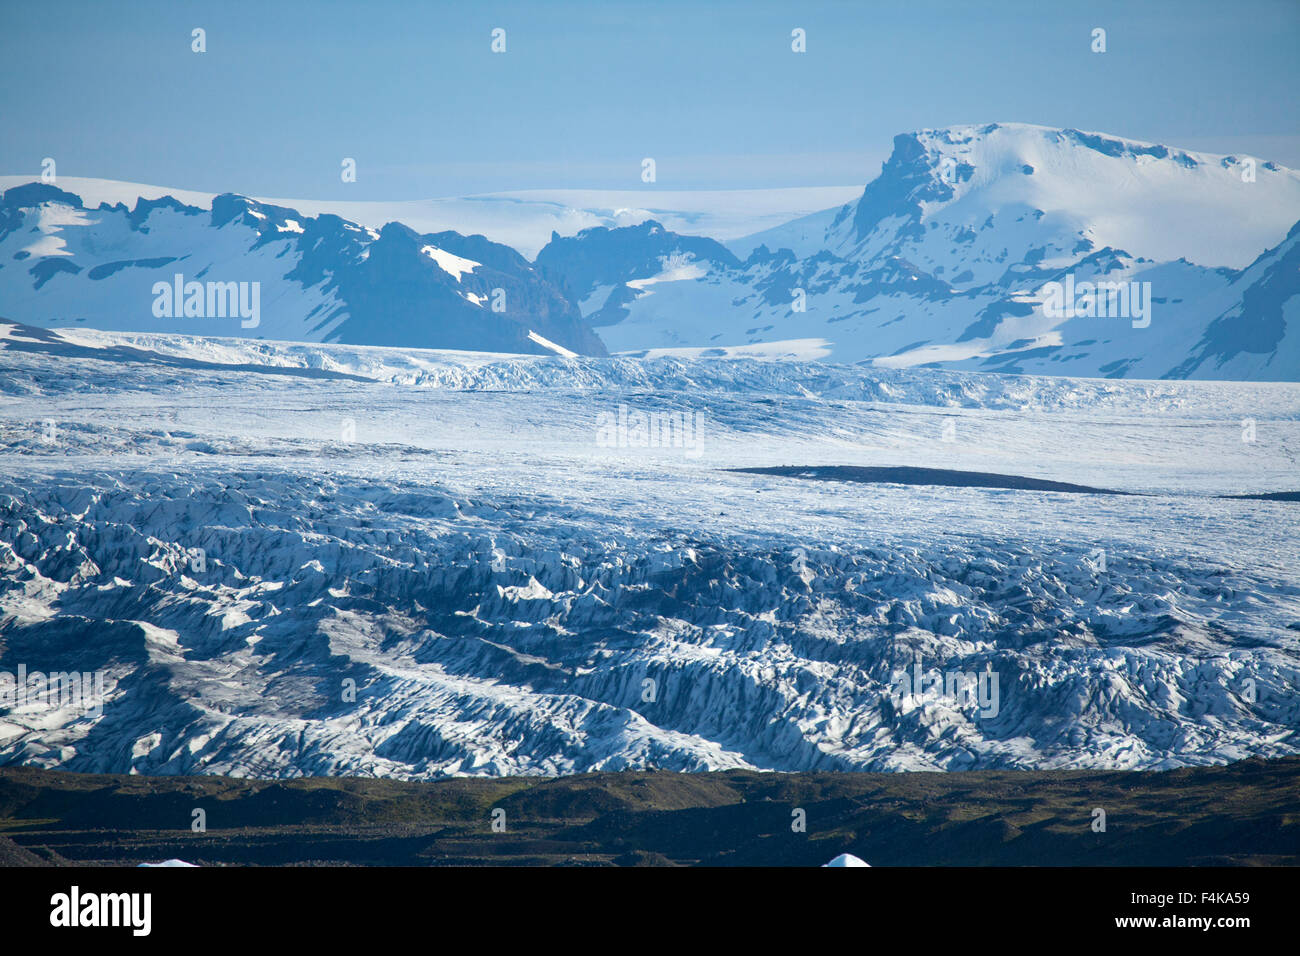 Ghiacciaio Fjallsjokull, una propaggine del Vatnajokull tappo di ghiaccio. Vatnajokull National Park, Sudhurland, Islanda. Foto Stock